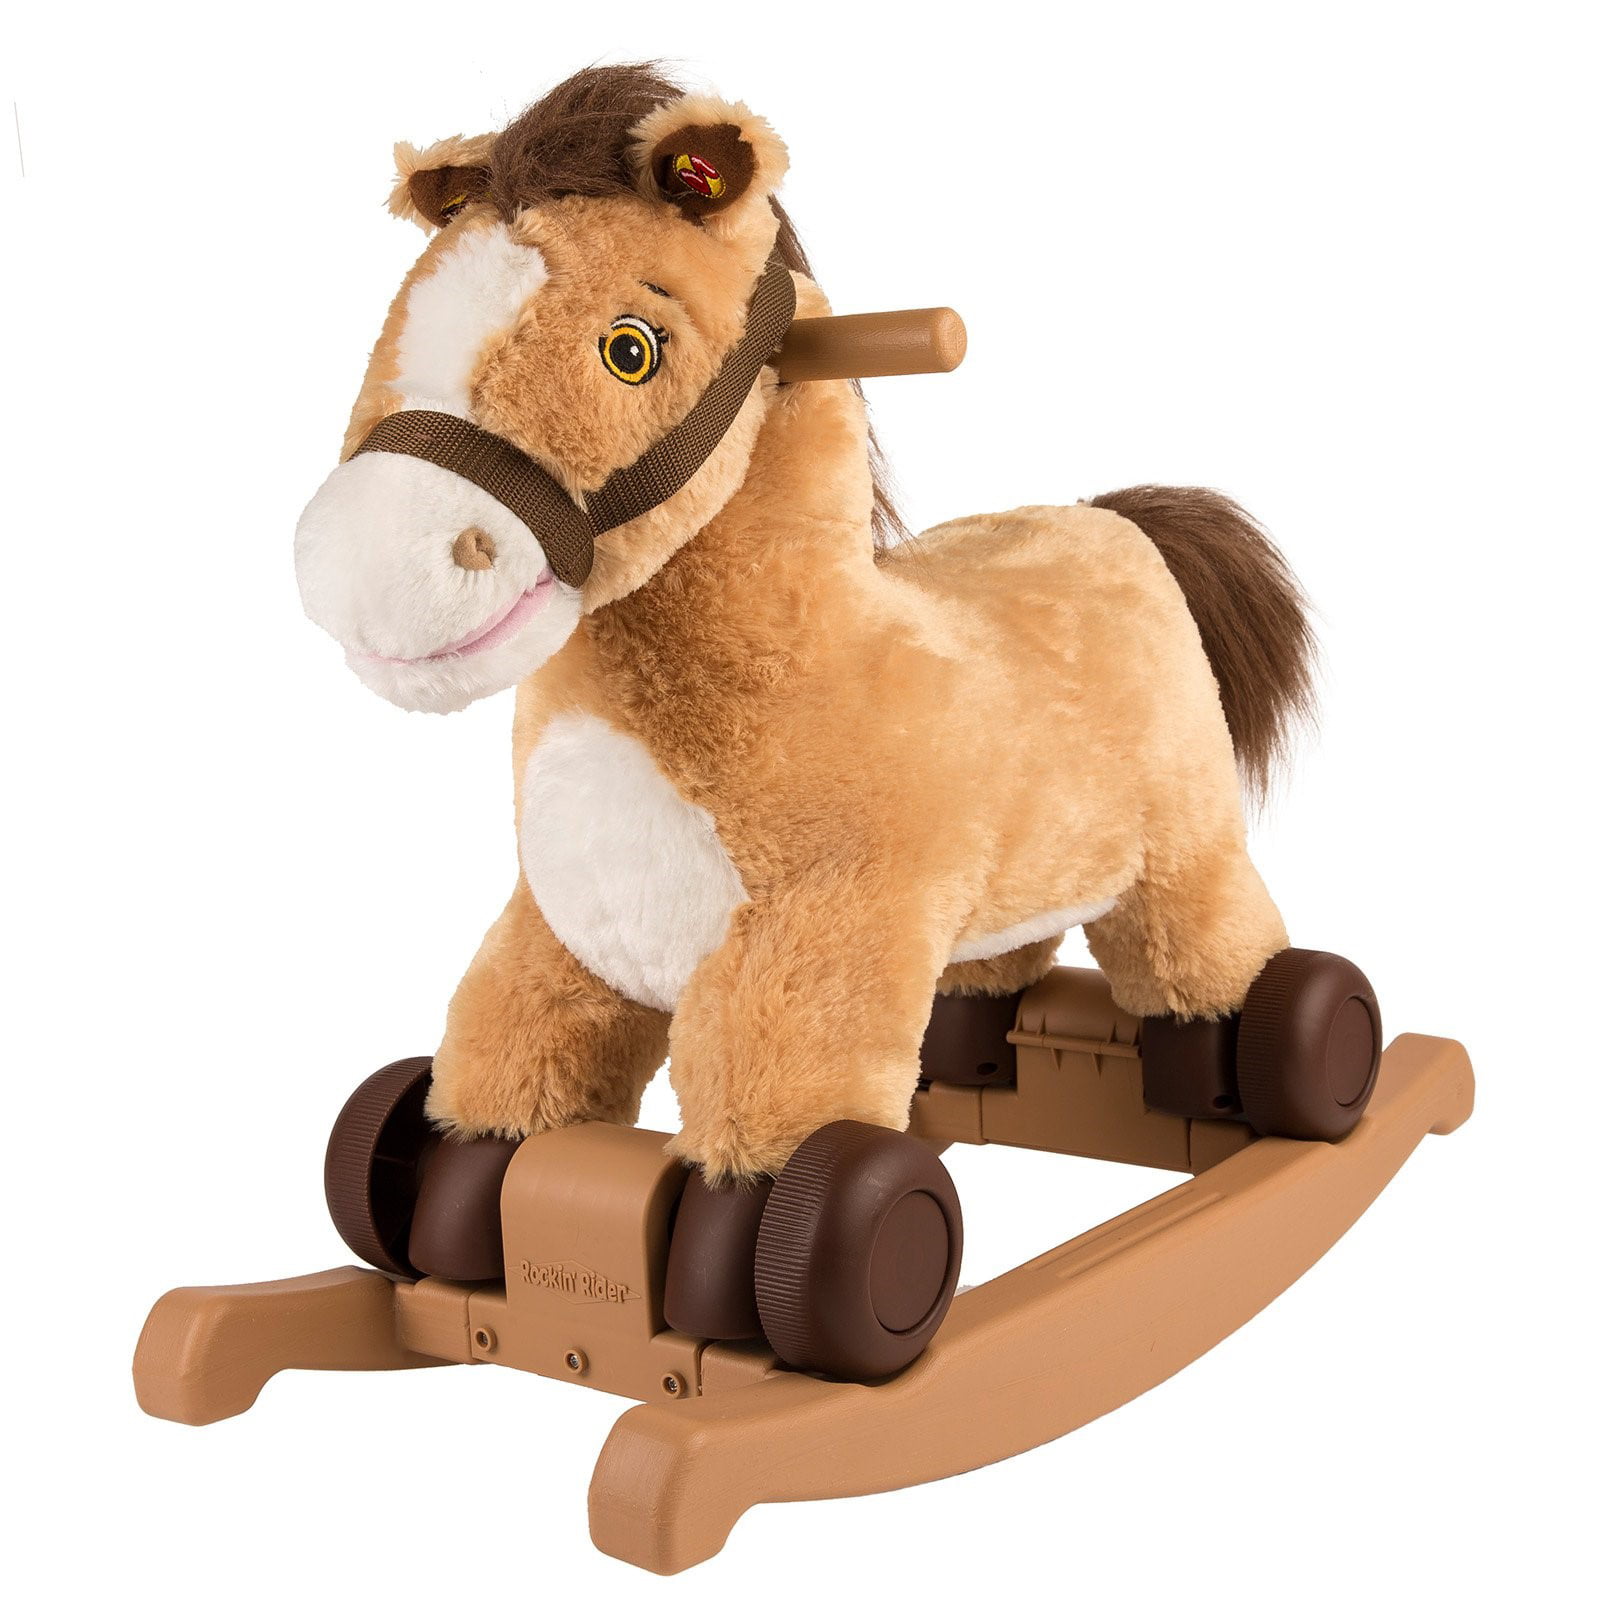 Soft Plush Toy, Animal Rocking Horse 